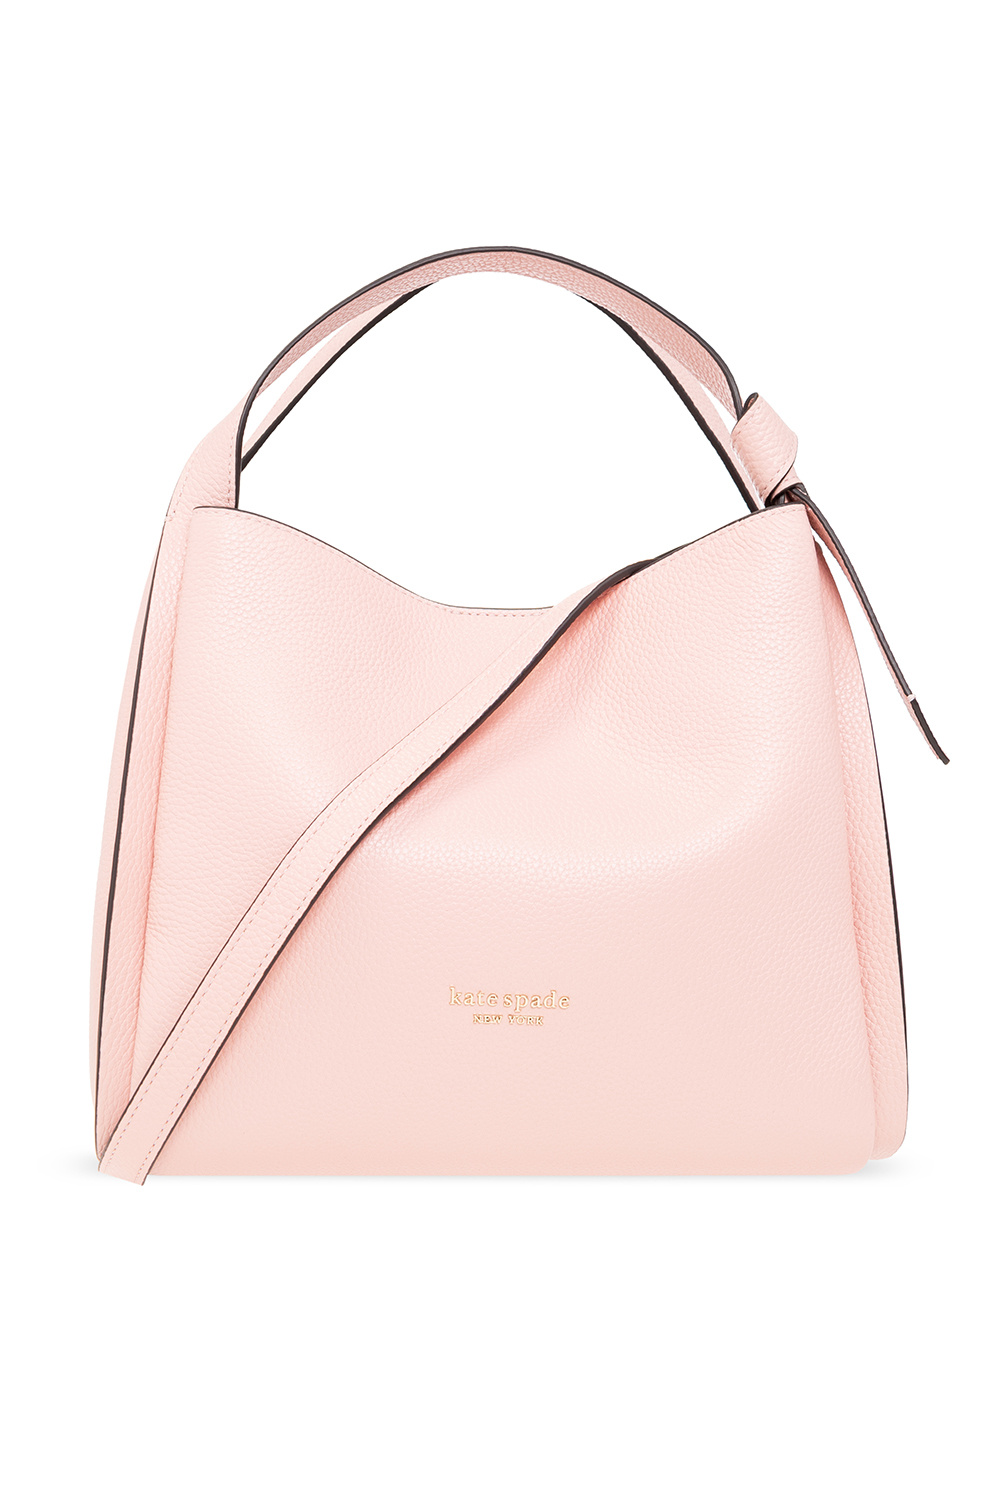 Kate Spade Bloom Quilt Small Shoulder Bag in Pink